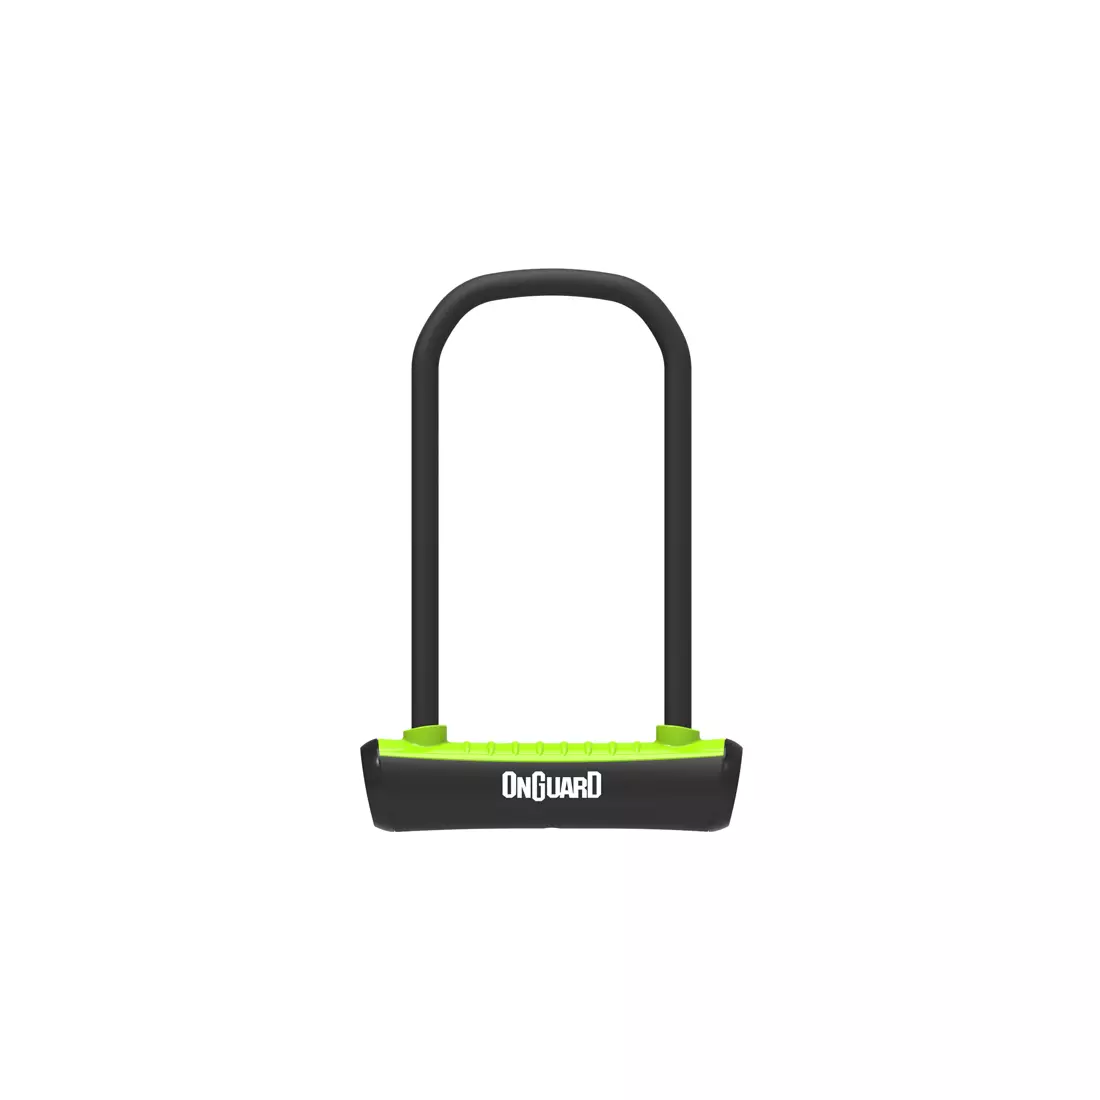 ONGUARD Fahrradverschluss Neon u-lock 292mm + 2 x Schlüssel, grün ONG-8152GR